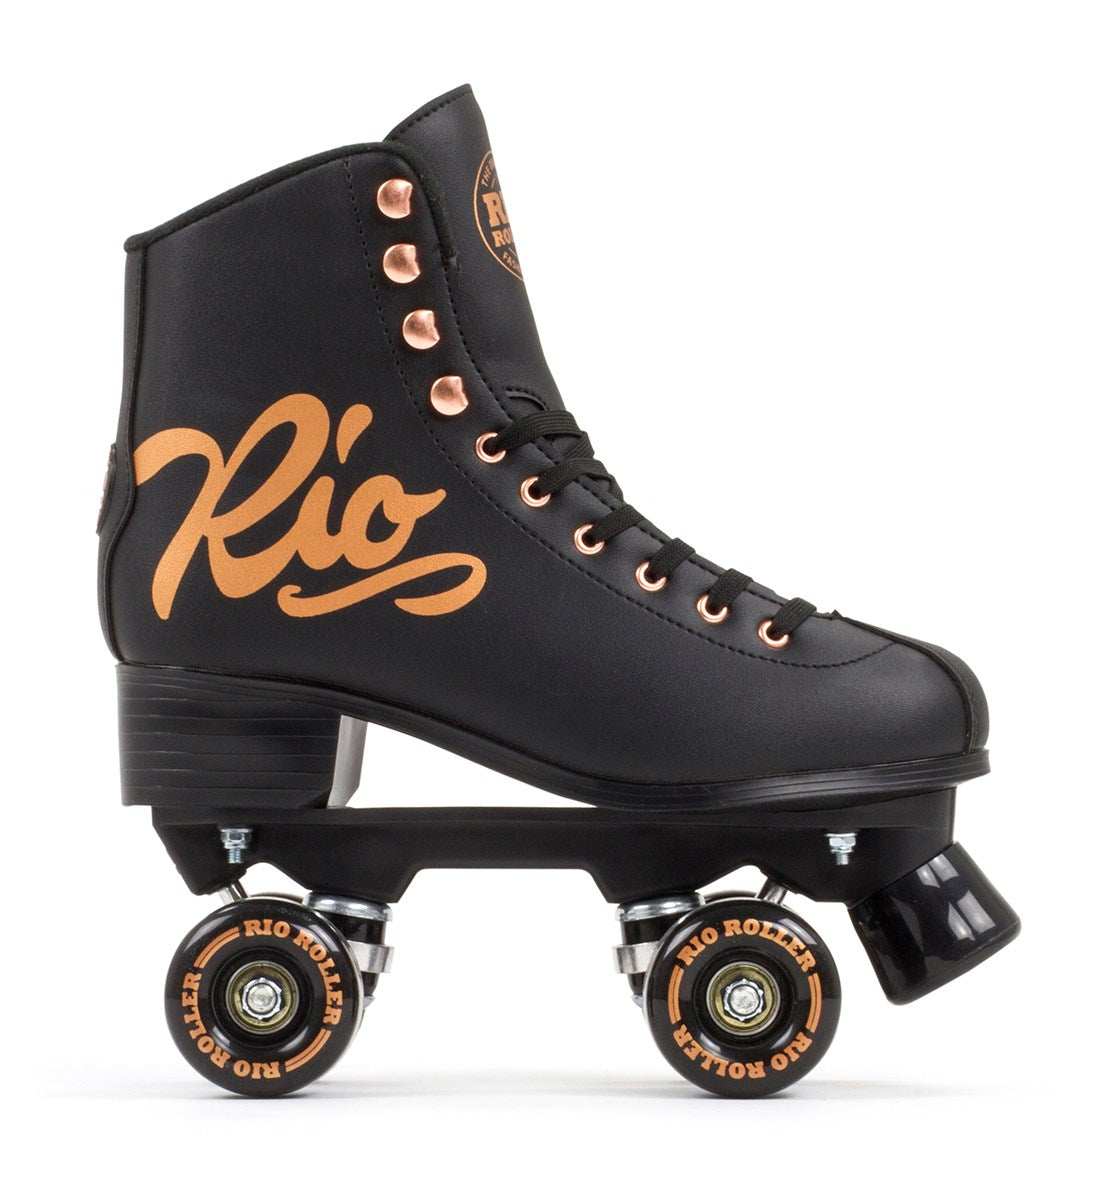 Rio Roller Rose Quad Roller Skates - Rose Black - Side